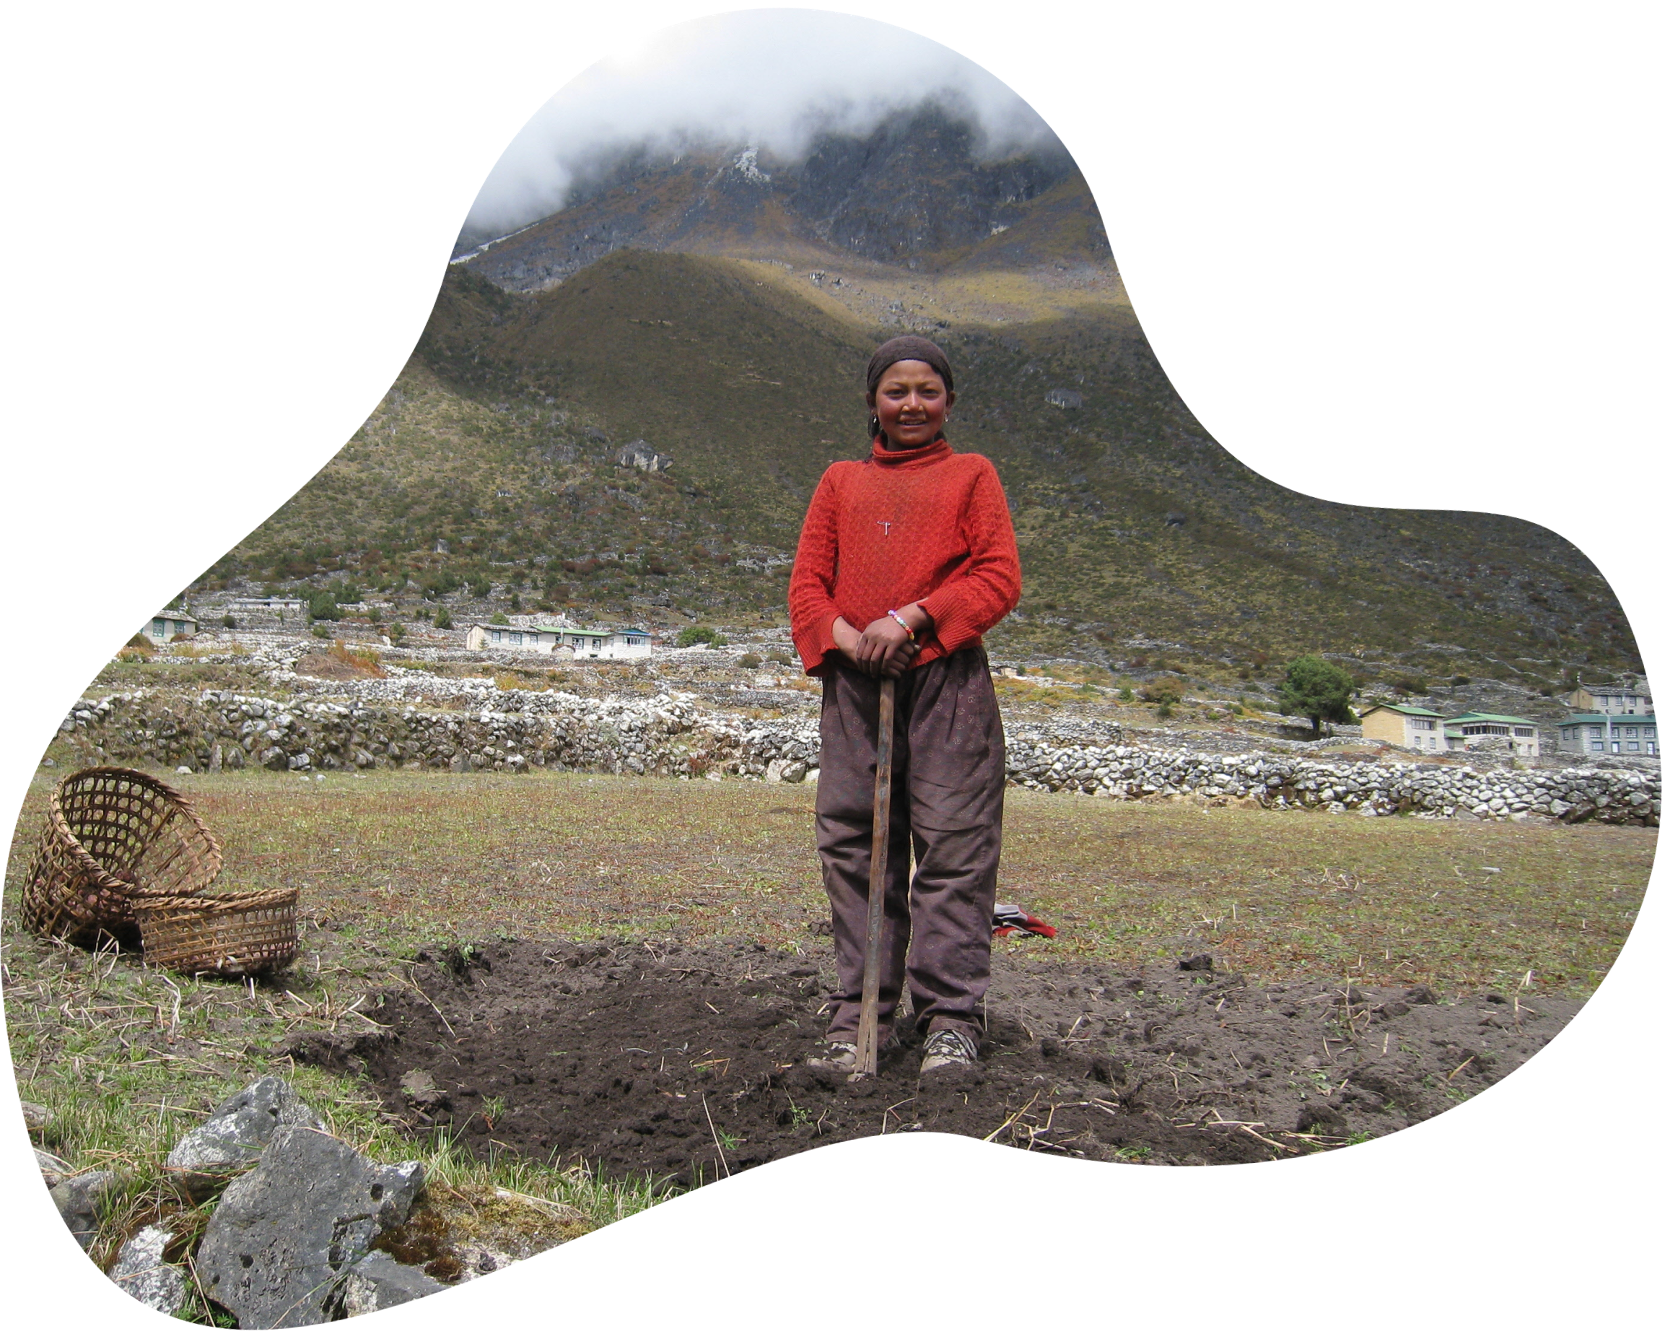 Woman standing in mine field